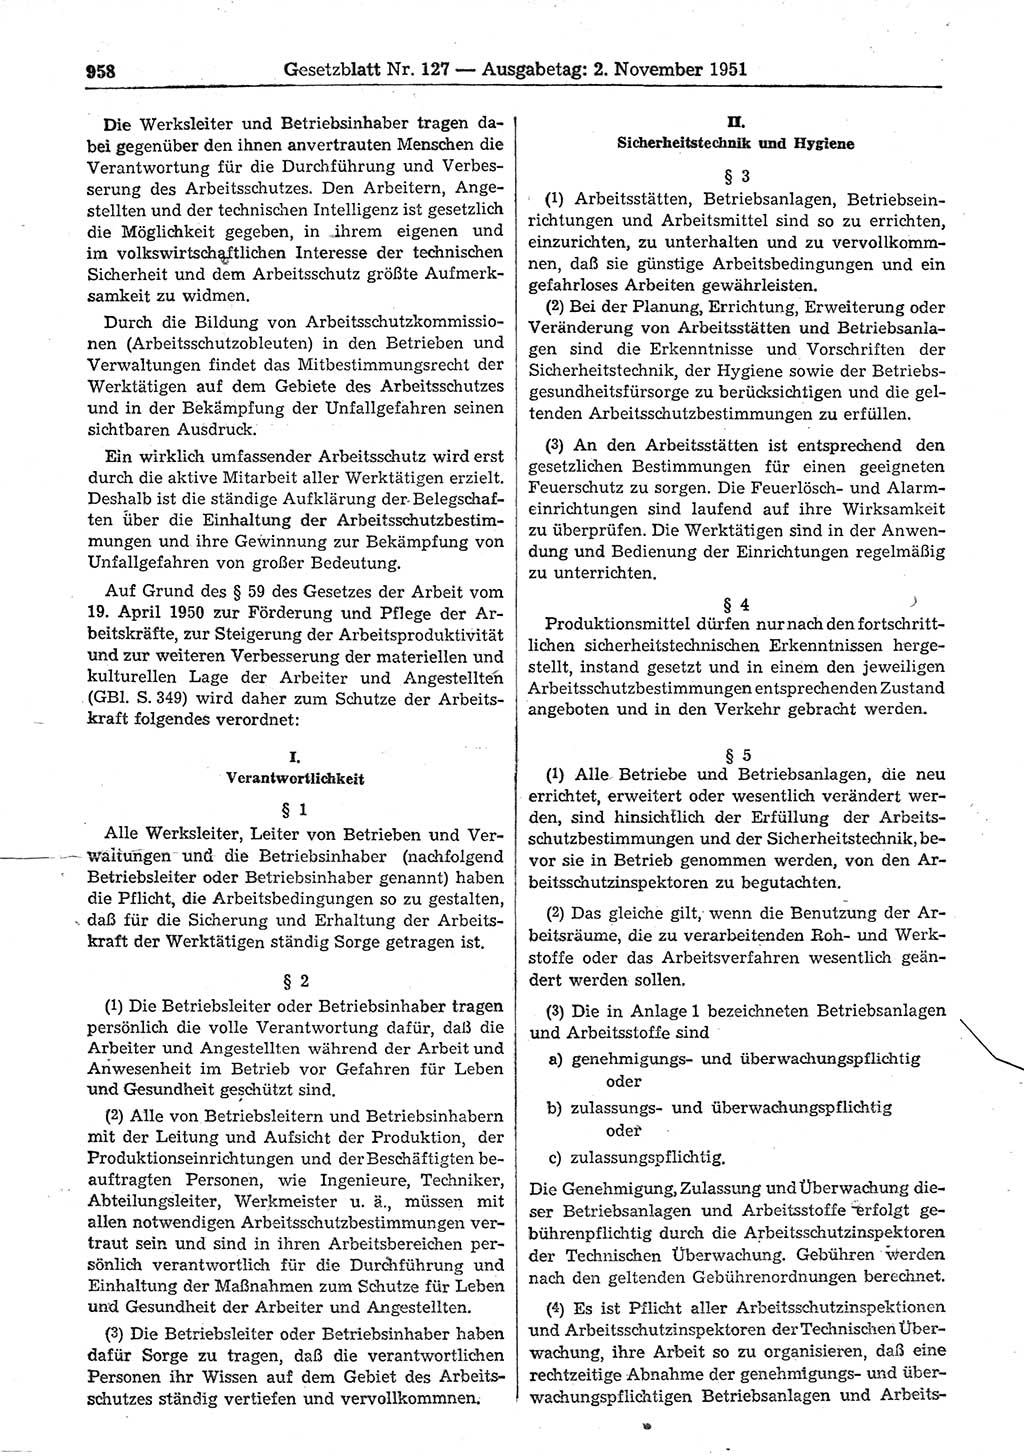 Gesetzblatt (GBl.) der Deutschen Demokratischen Republik (DDR) 1951, Seite 958 (GBl. DDR 1951, S. 958)